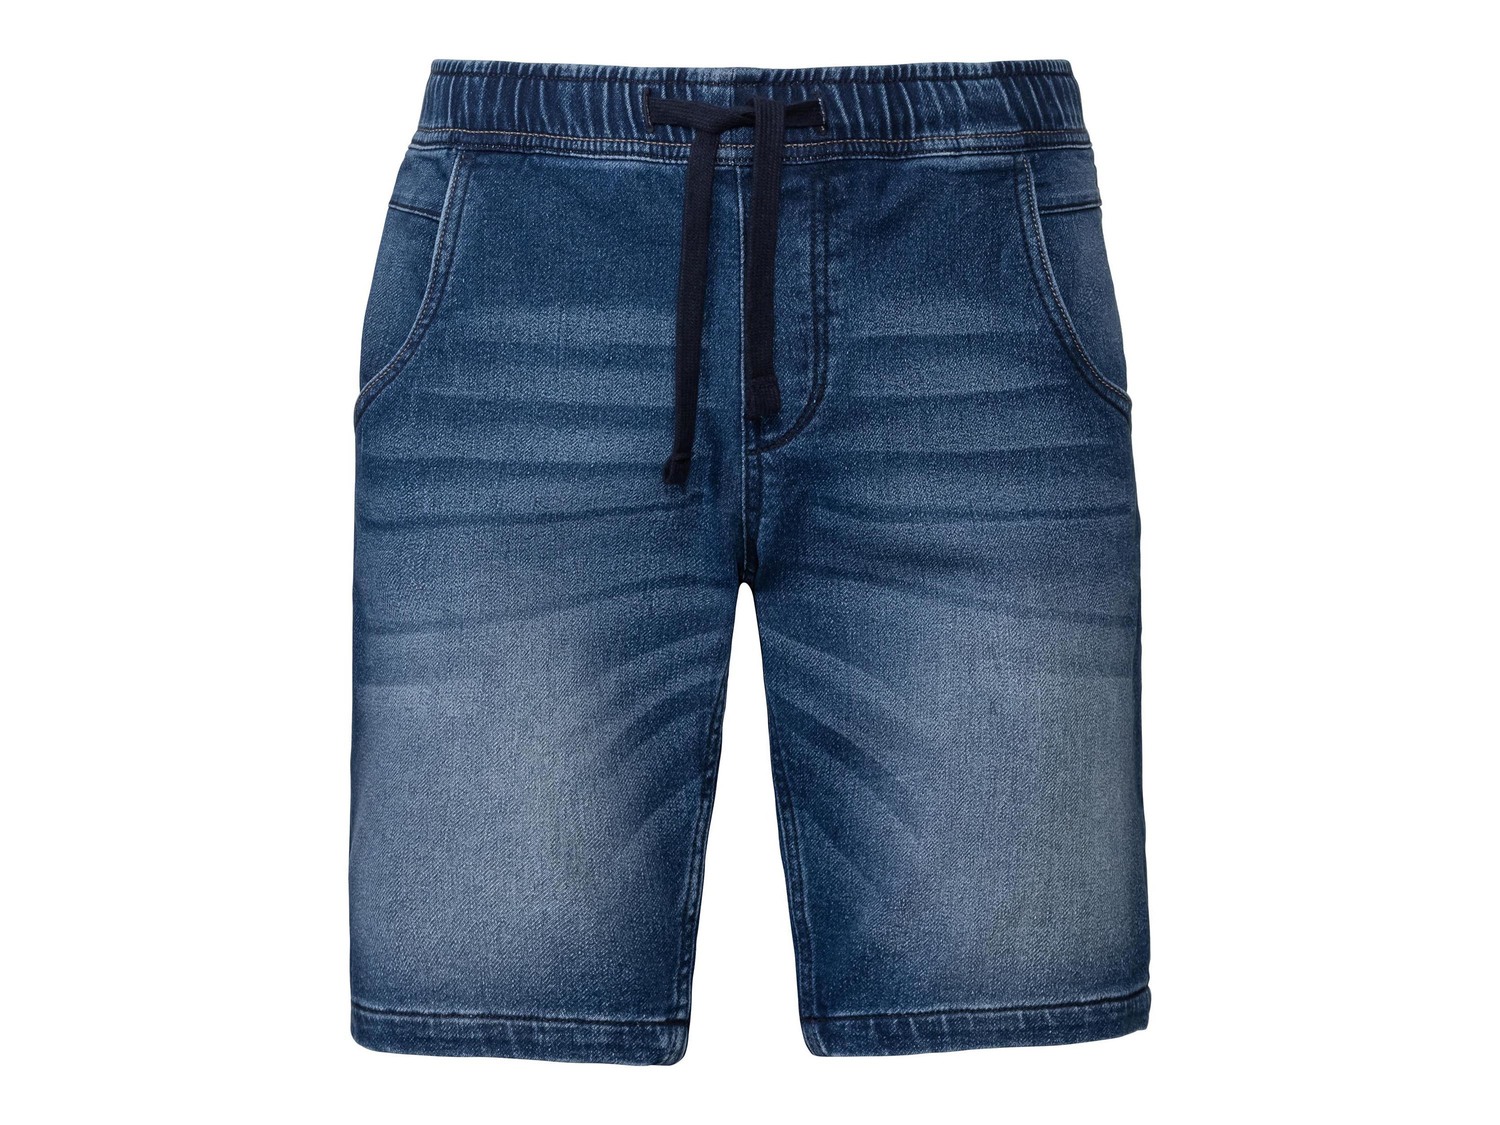 Bermuda in jeans da uomo Livergy, prezzo 7.99 &#8364;  
Misure: 46-56